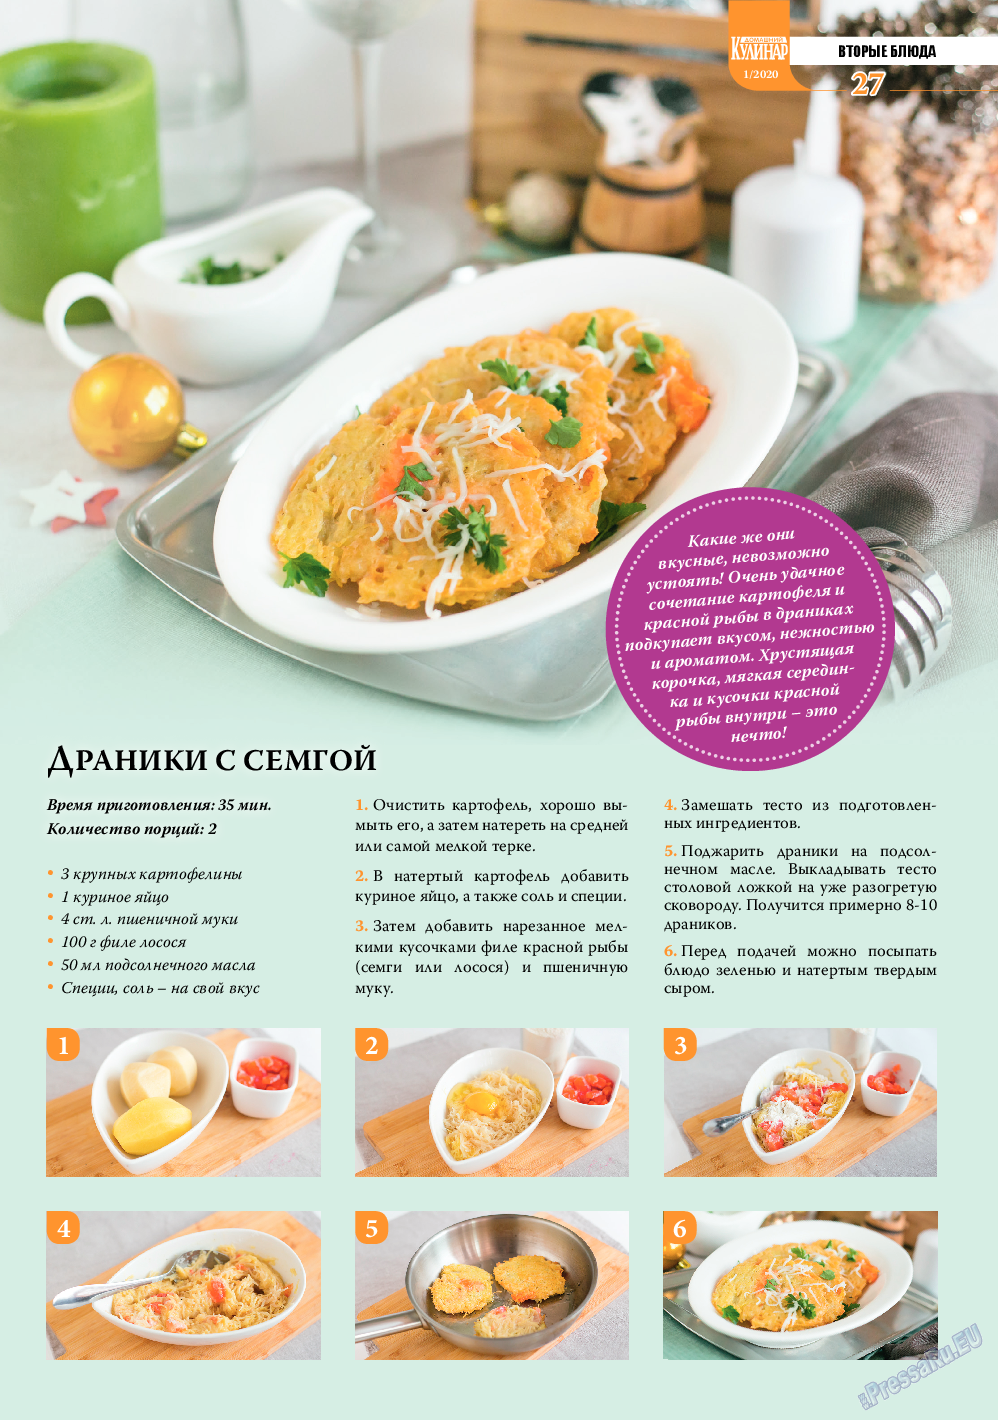 Домашний кулинар, журнал. 2020 №1 стр.27